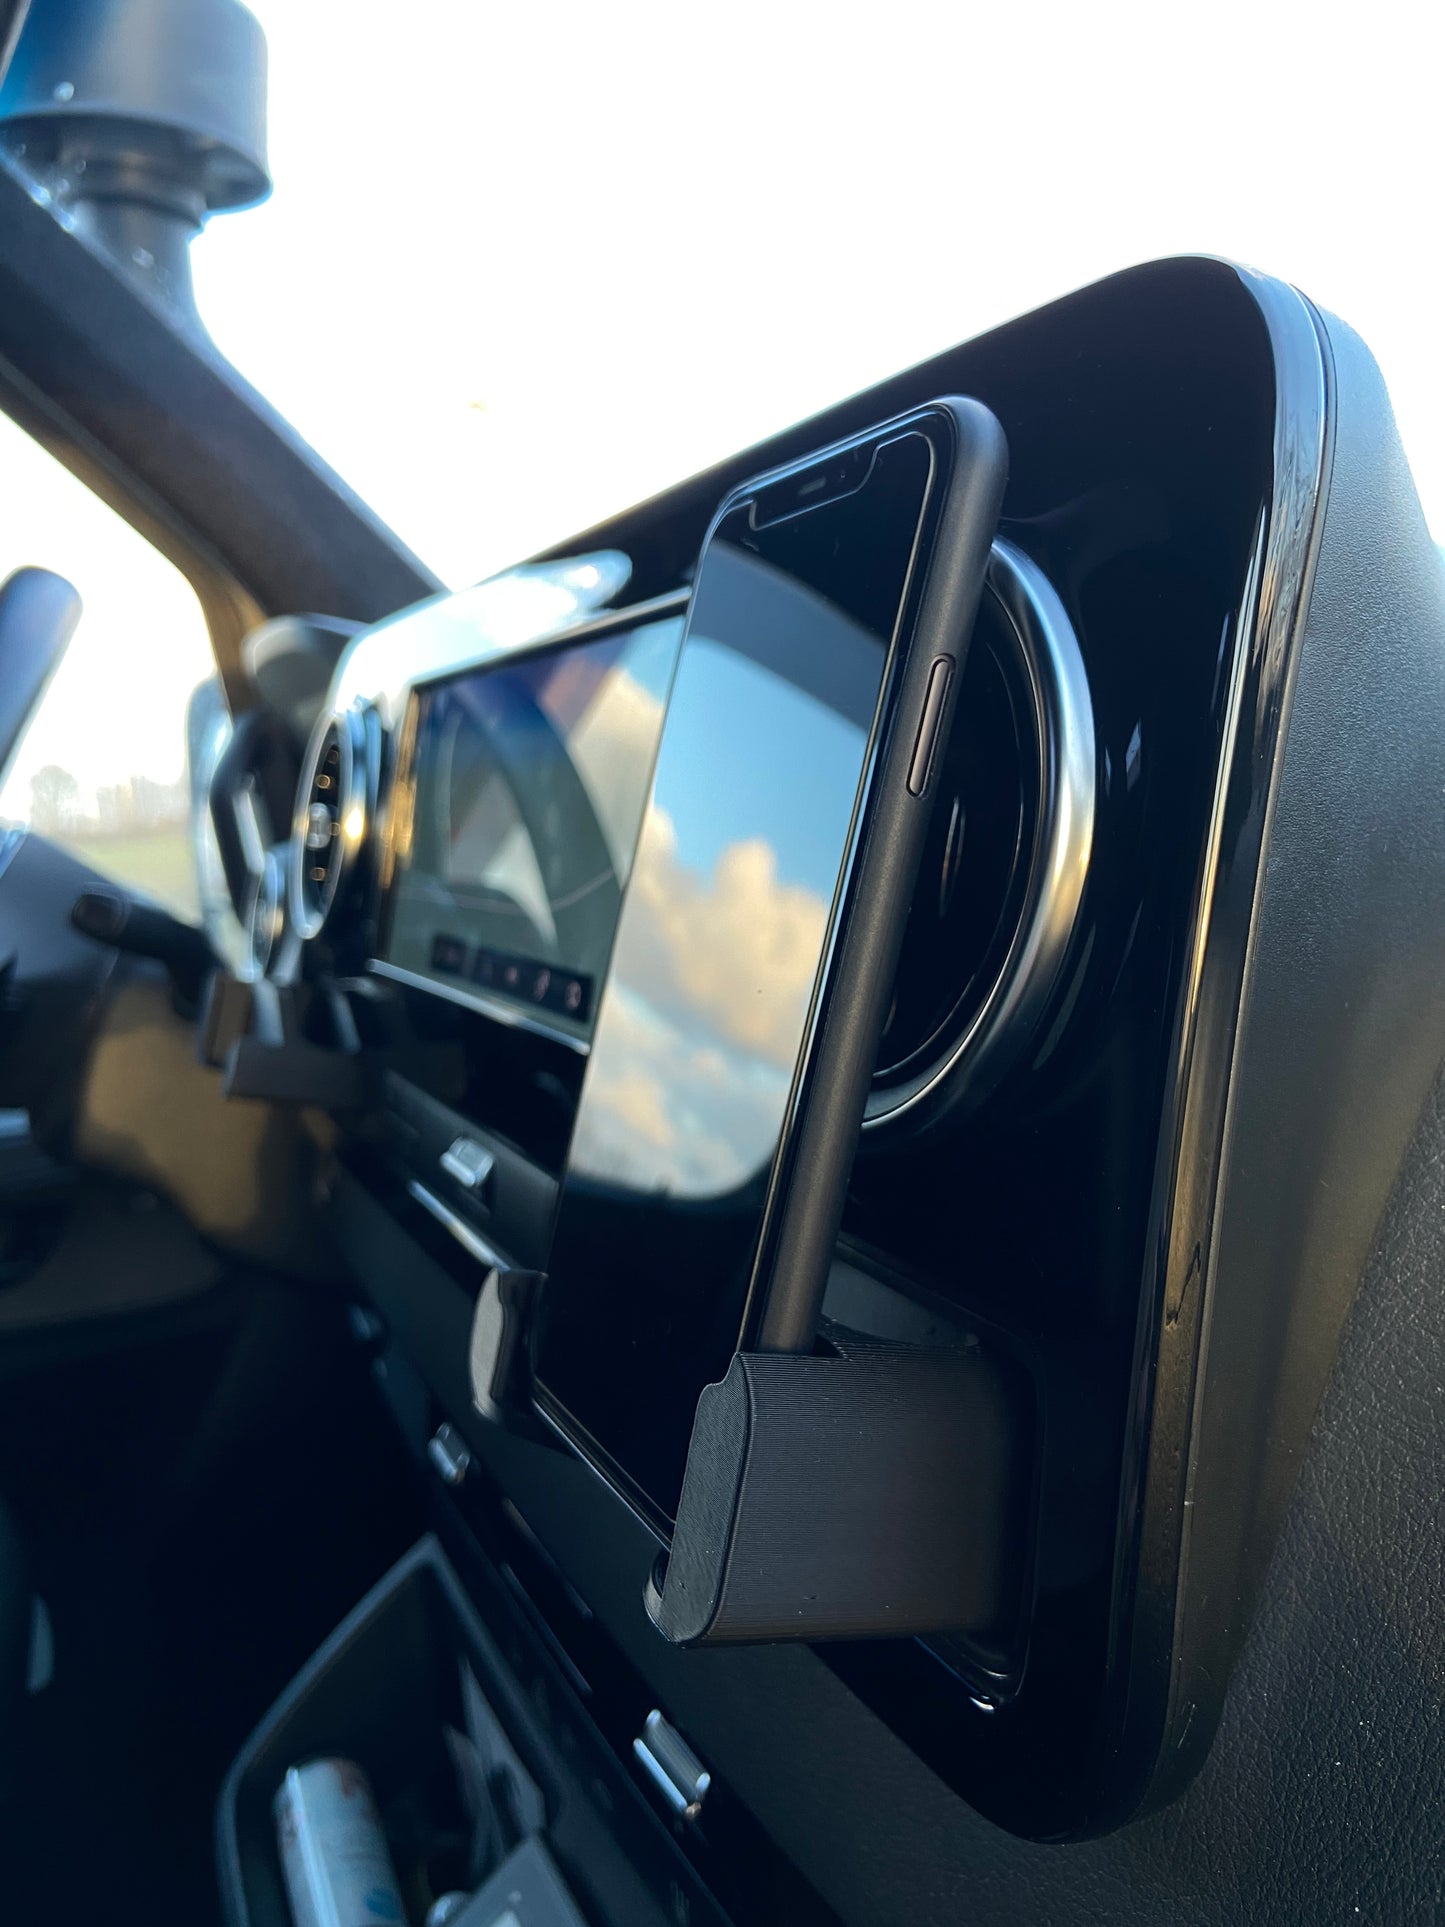 Smartphone Handyhalter passend für Mercedes Sprinter W907 - Sichere und moderne Lösung für dein Vanlife Abenteuer, Roadtrip, Urlaub, Reise